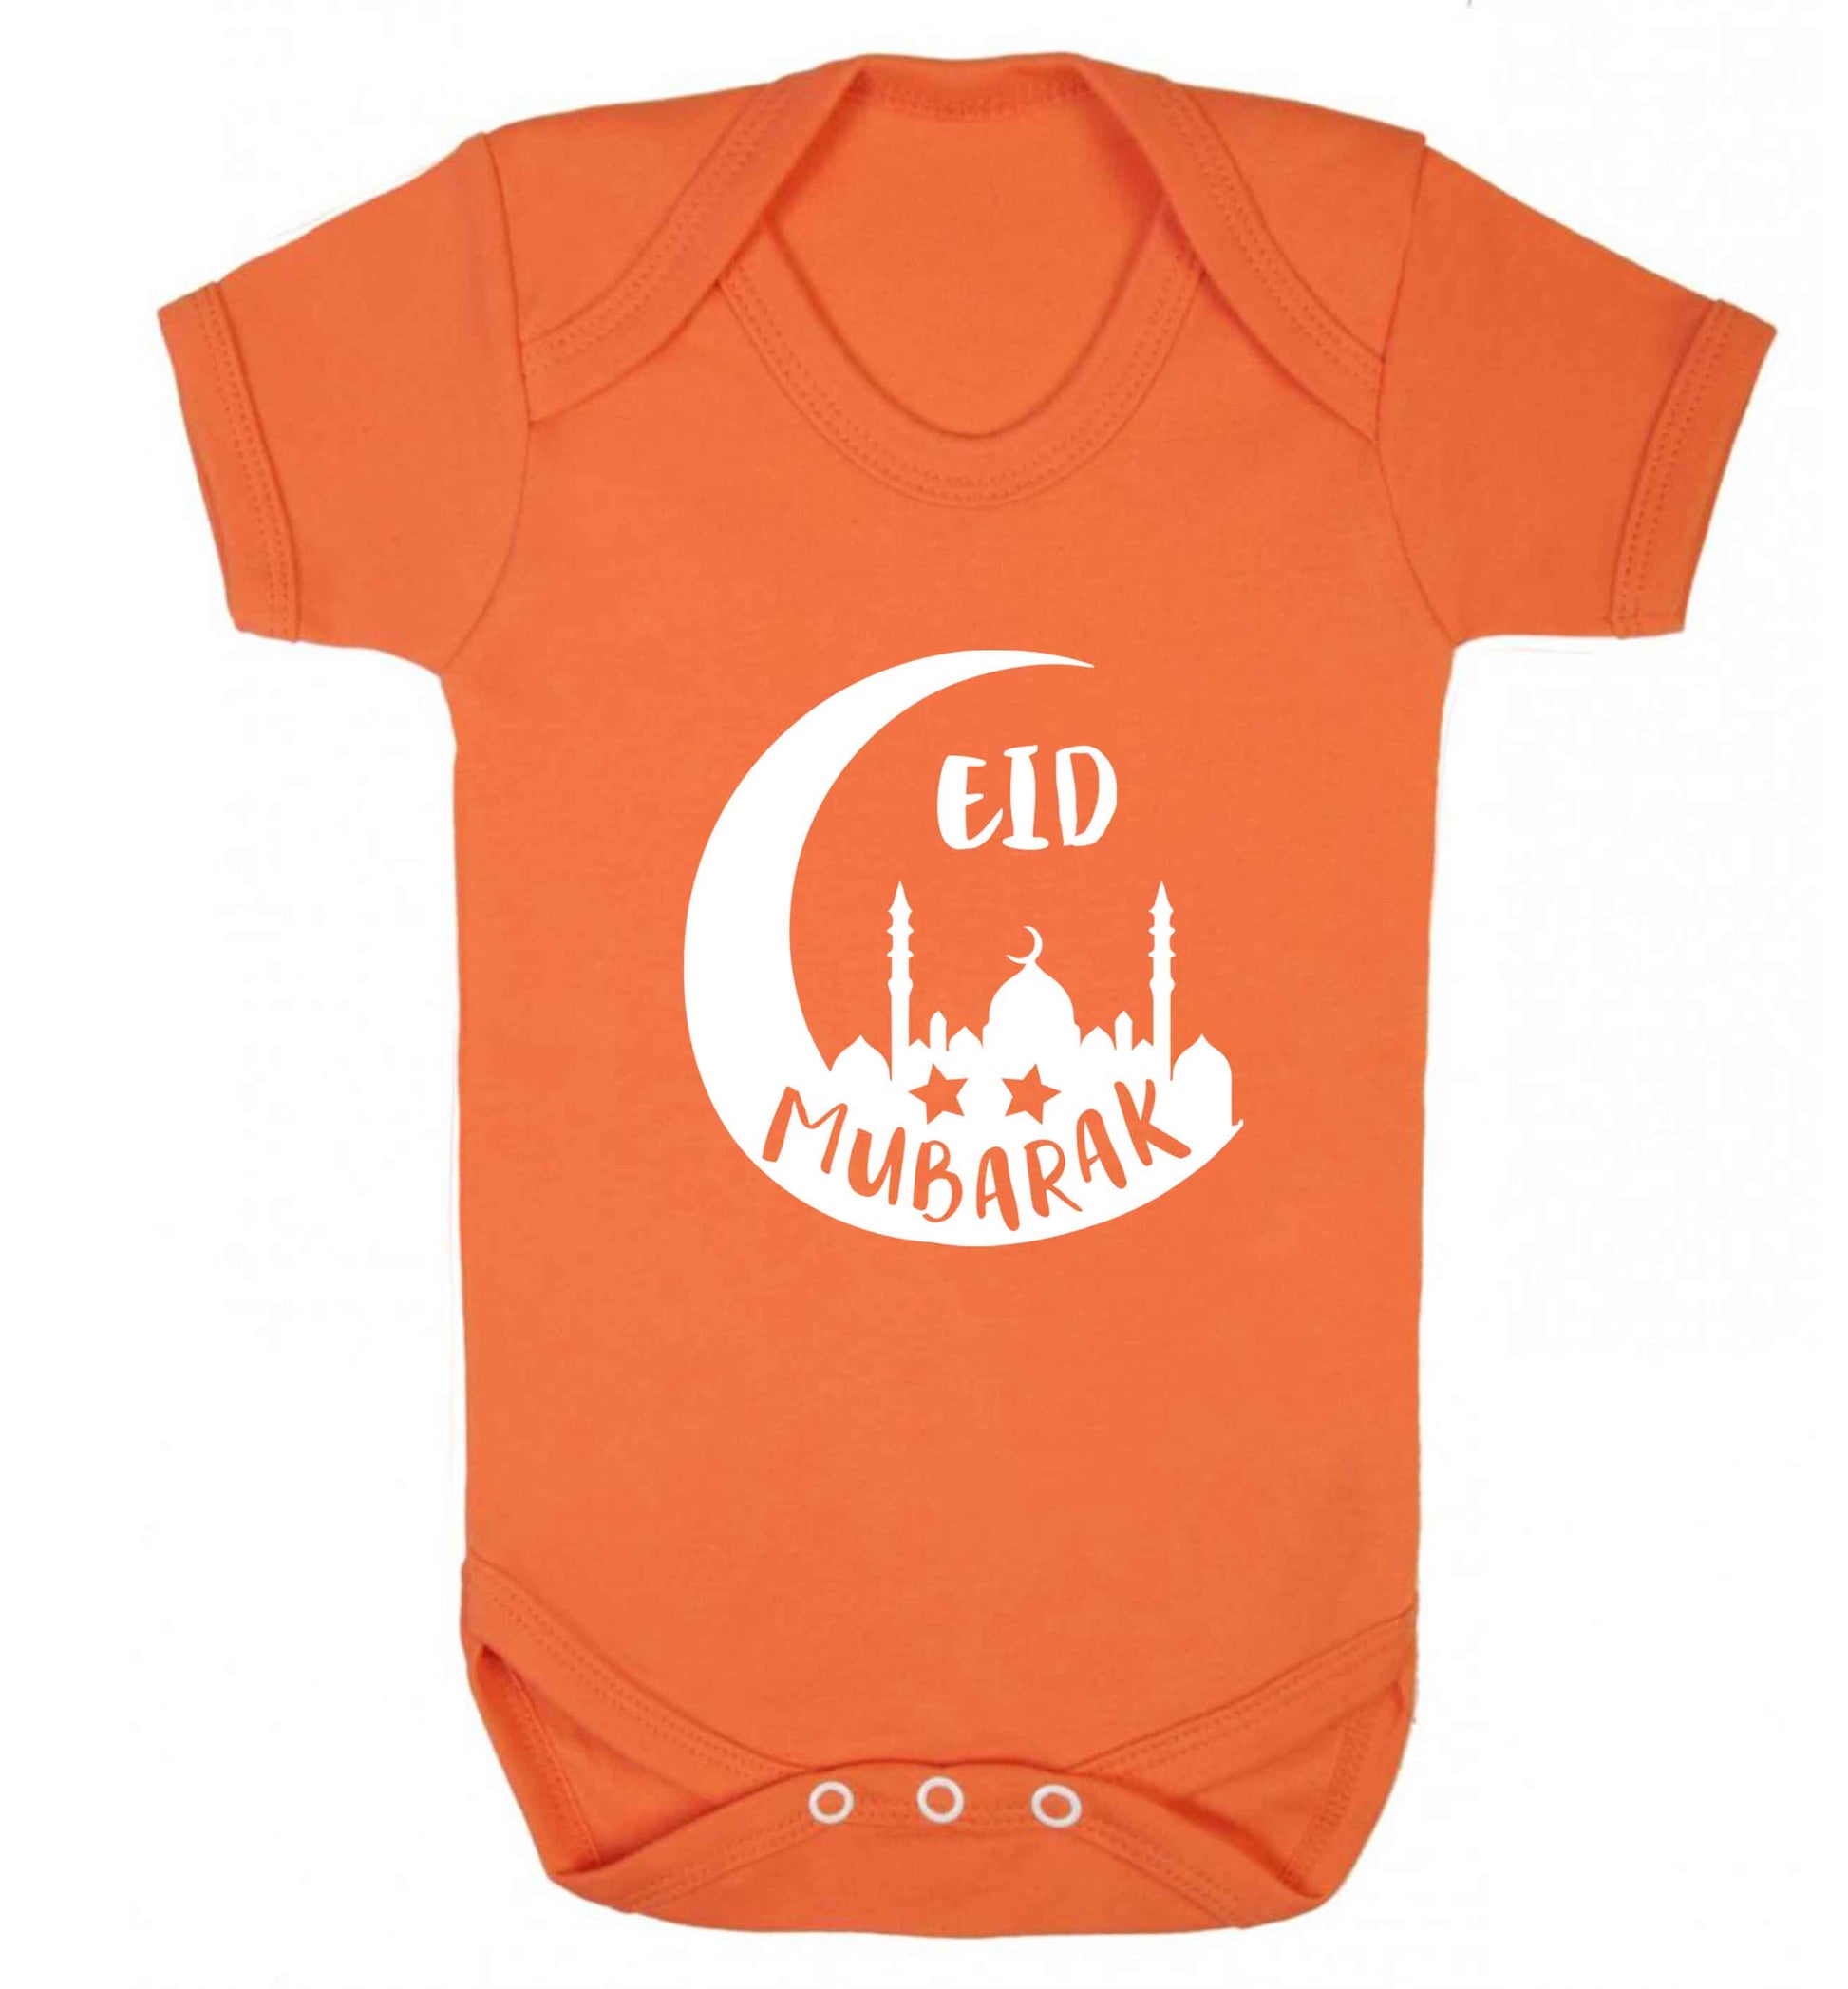 Eid mubarak baby vest orange 18-24 months